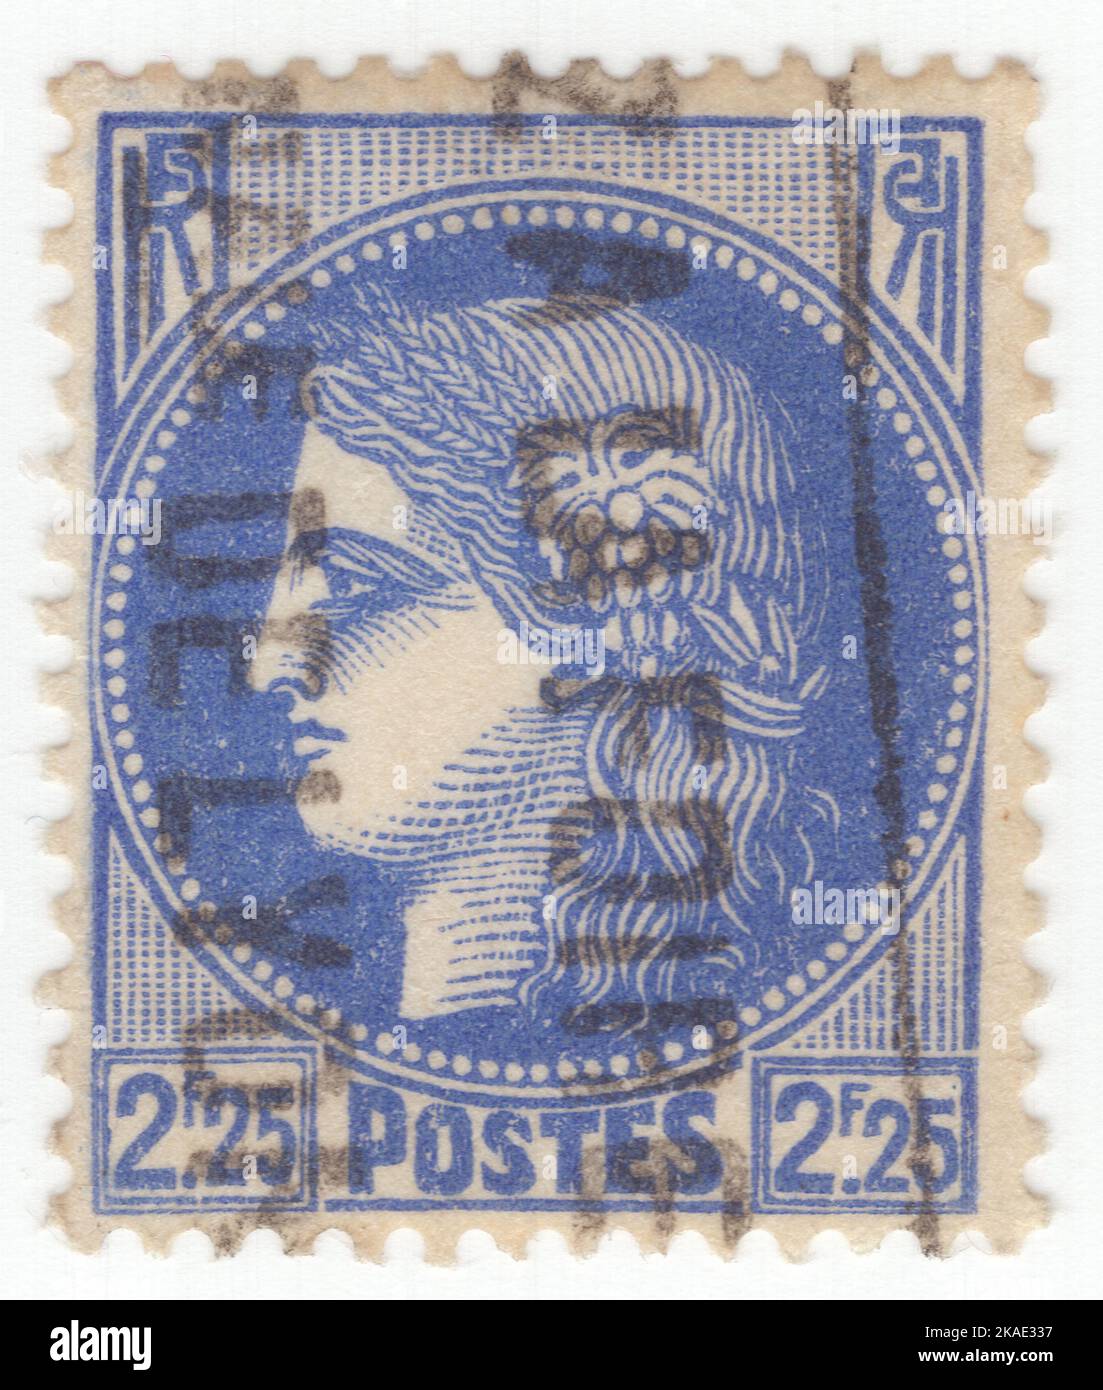 FRANKREICH - 1939: Eine ultramarine Briefmarke mit 2,25 Franken, die Ceres darstellt – Göttin der Landwirtschaft, Fruchtbarkeit, Getreide, Ernte, Mutterschaft, Die Erde, und kultivierten Kulturen Stockfoto